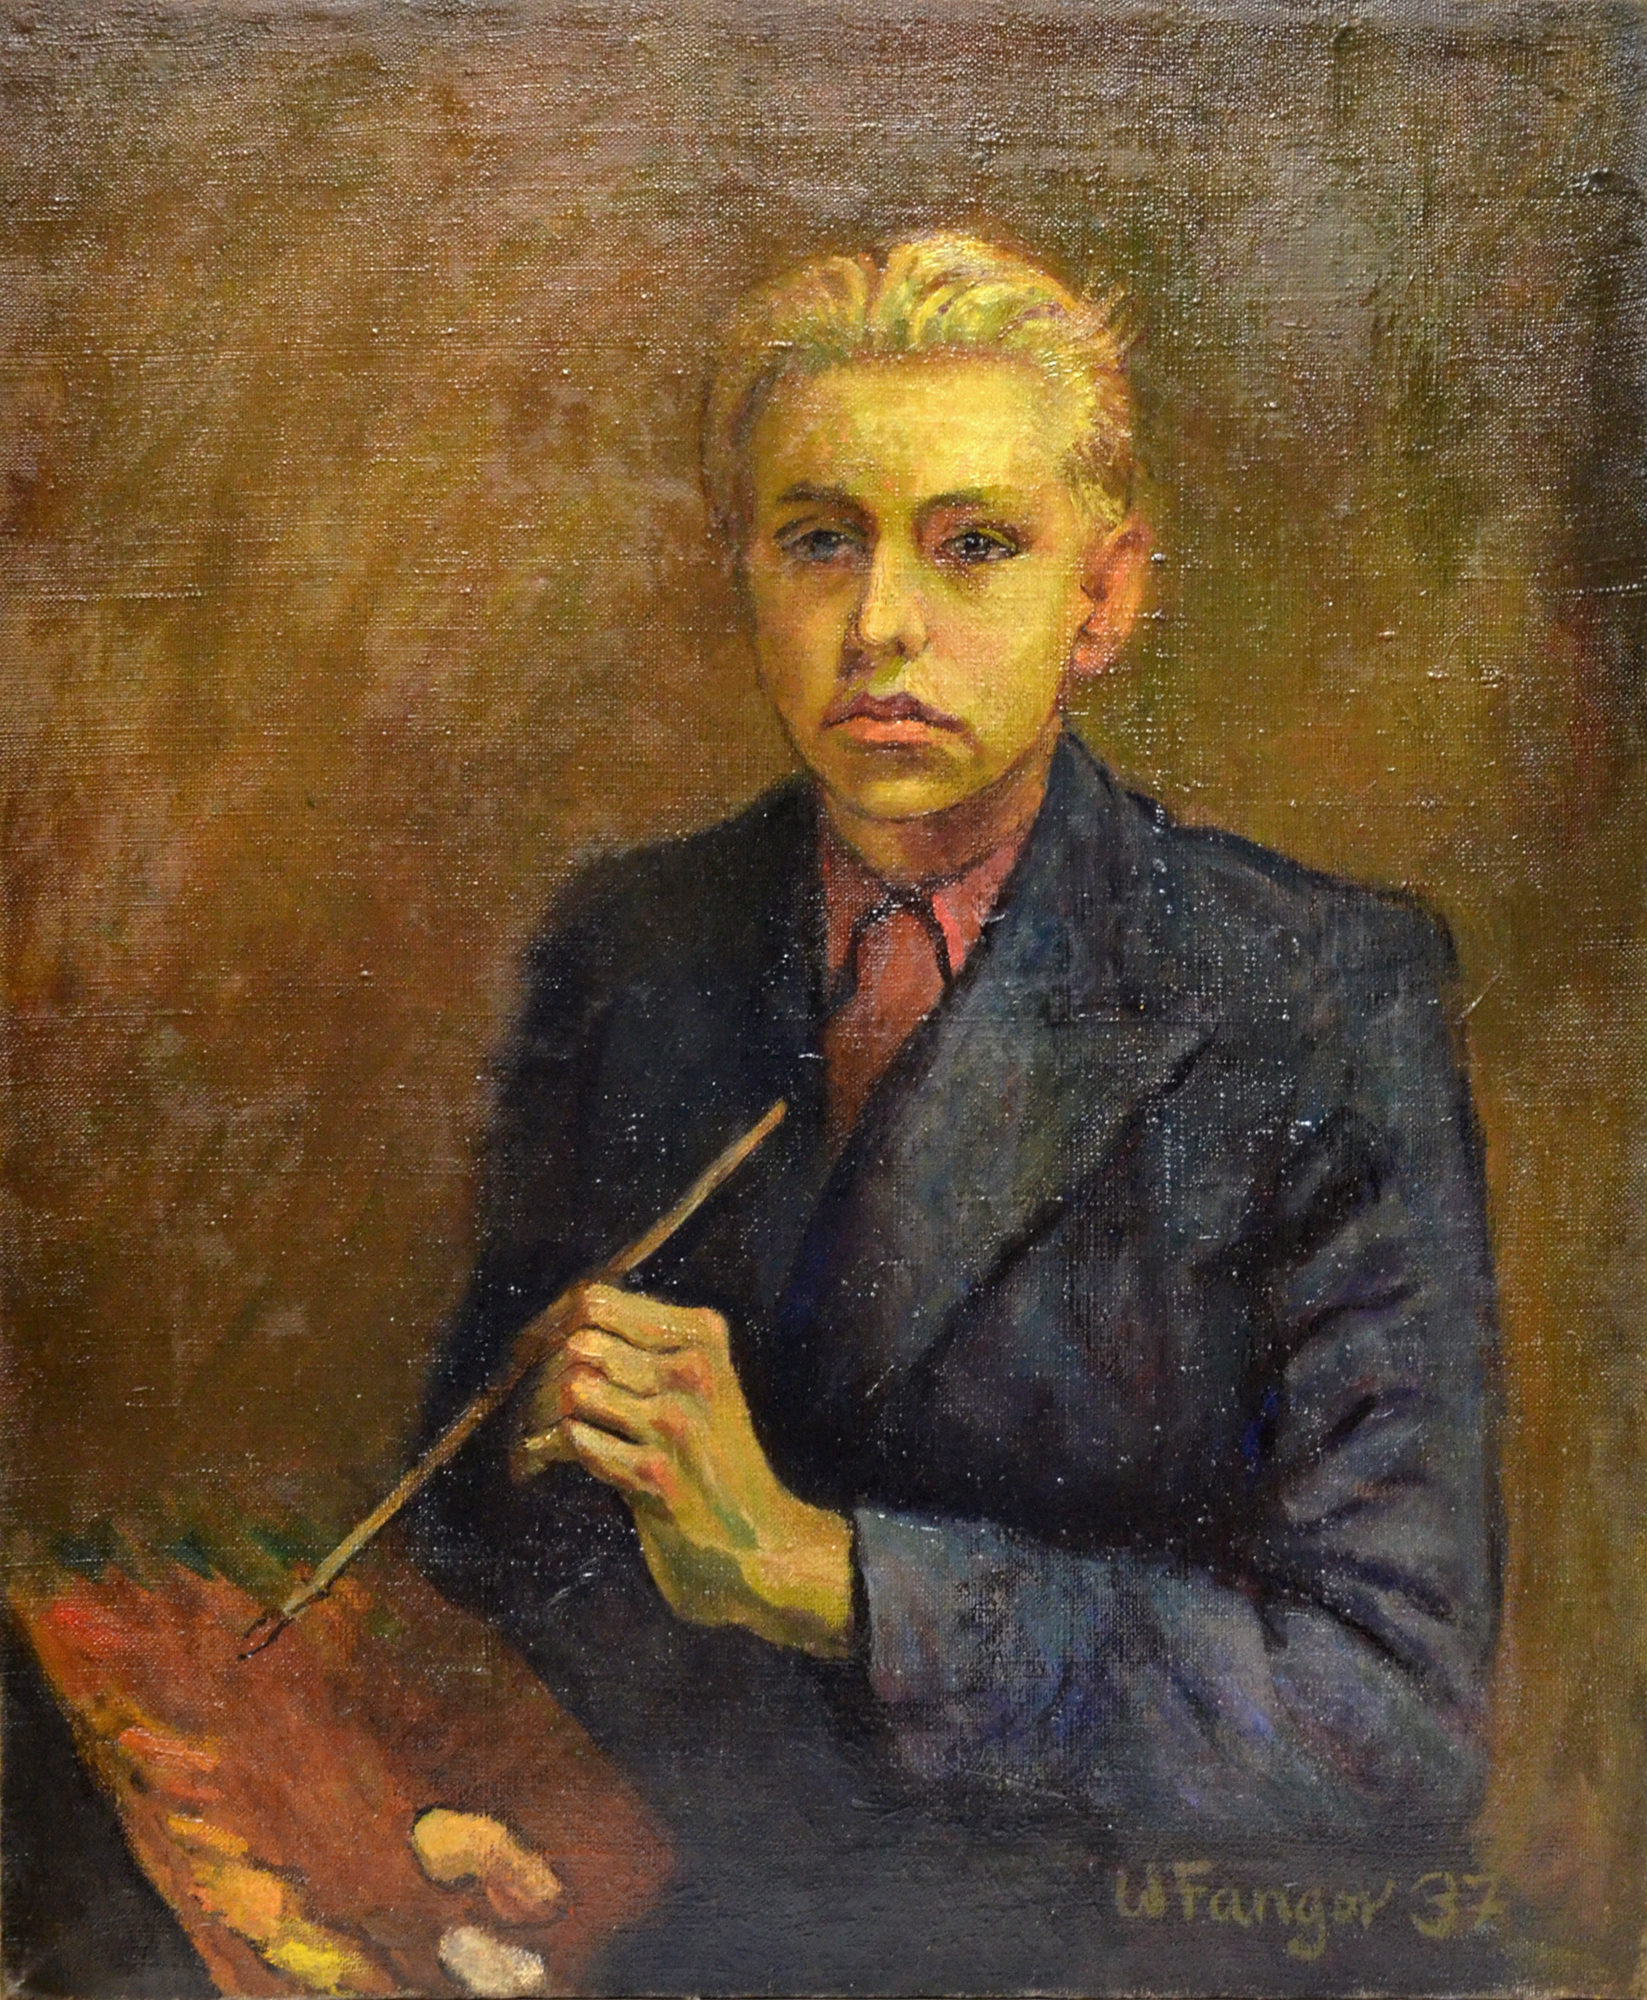 Wojciech Fangor: Autoportret, 1937